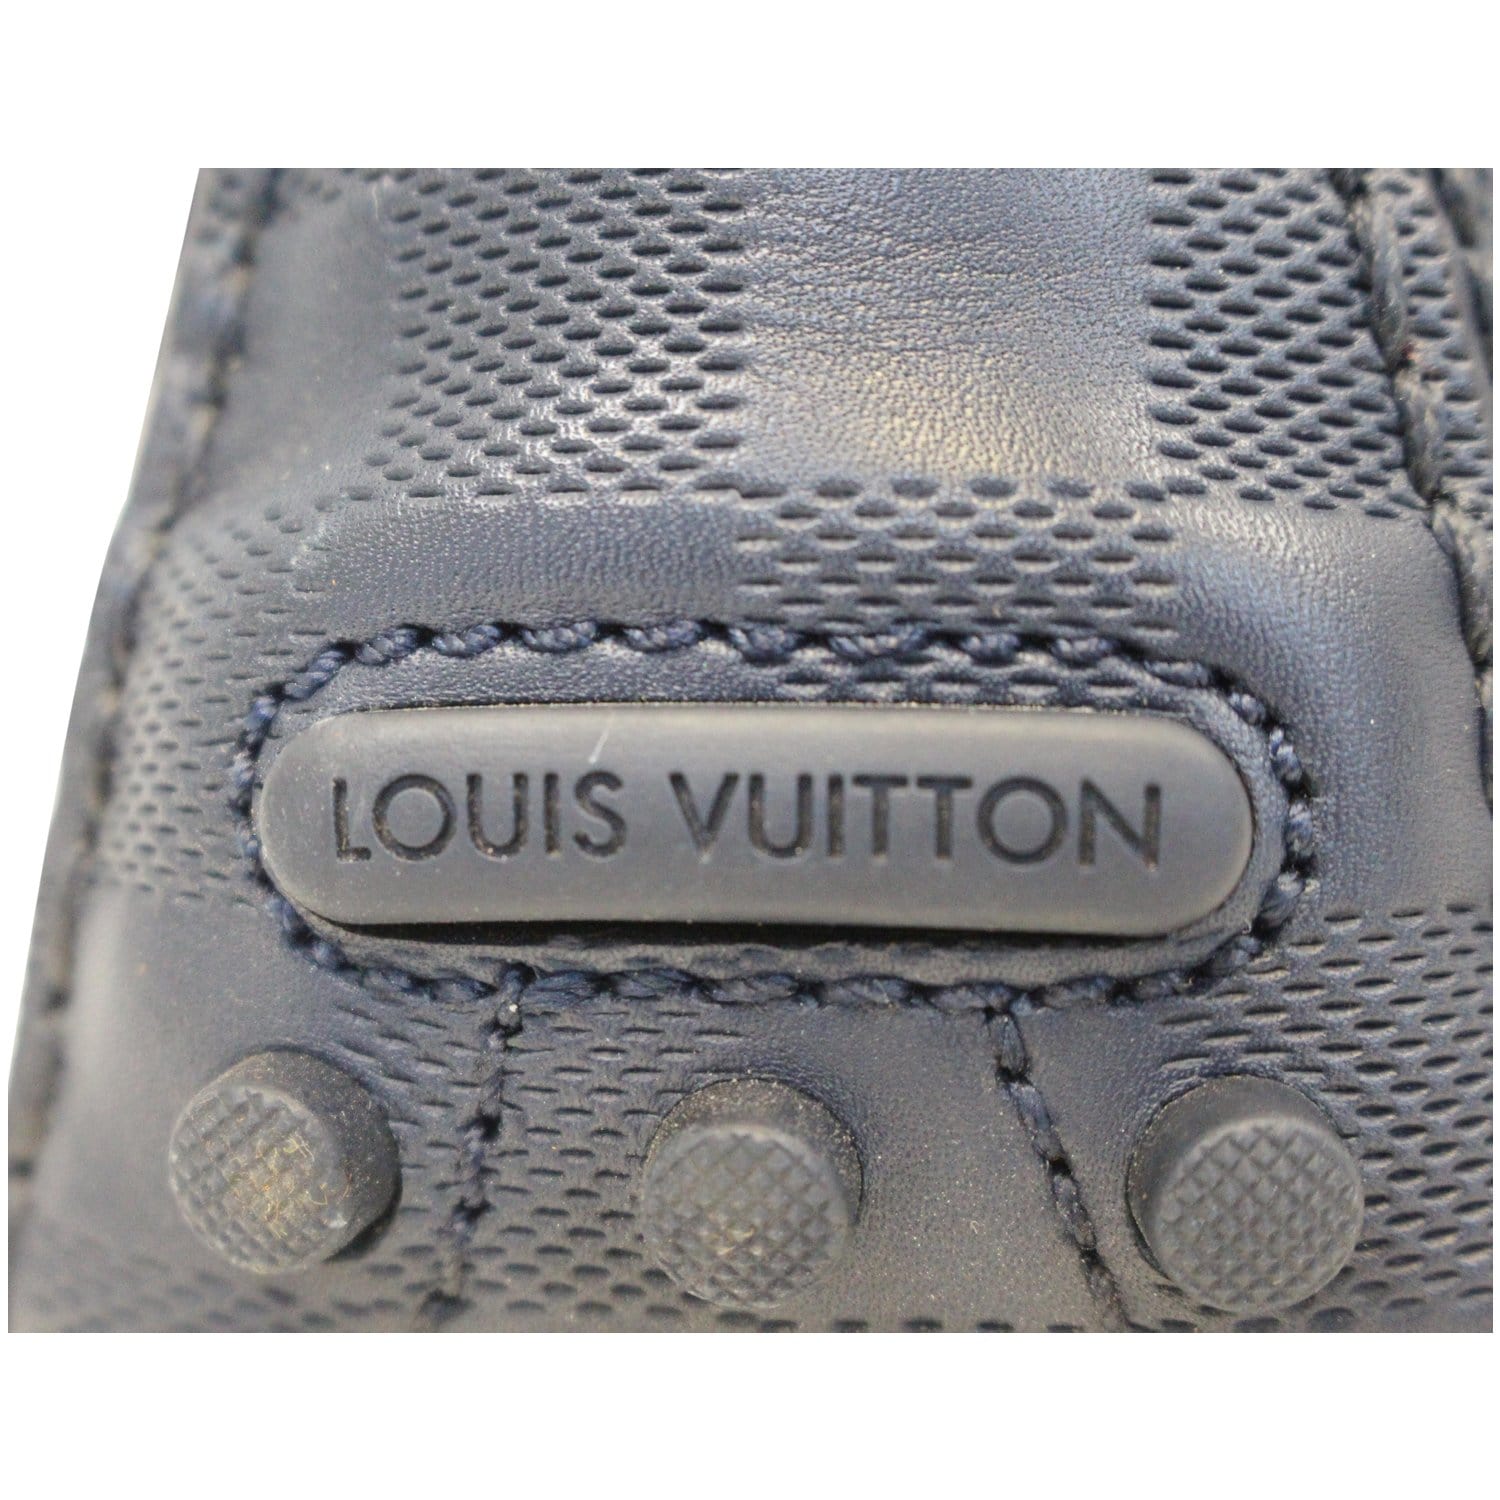 Louis Vuitton Hockenheim Moccasin Graphite. Size 08.5